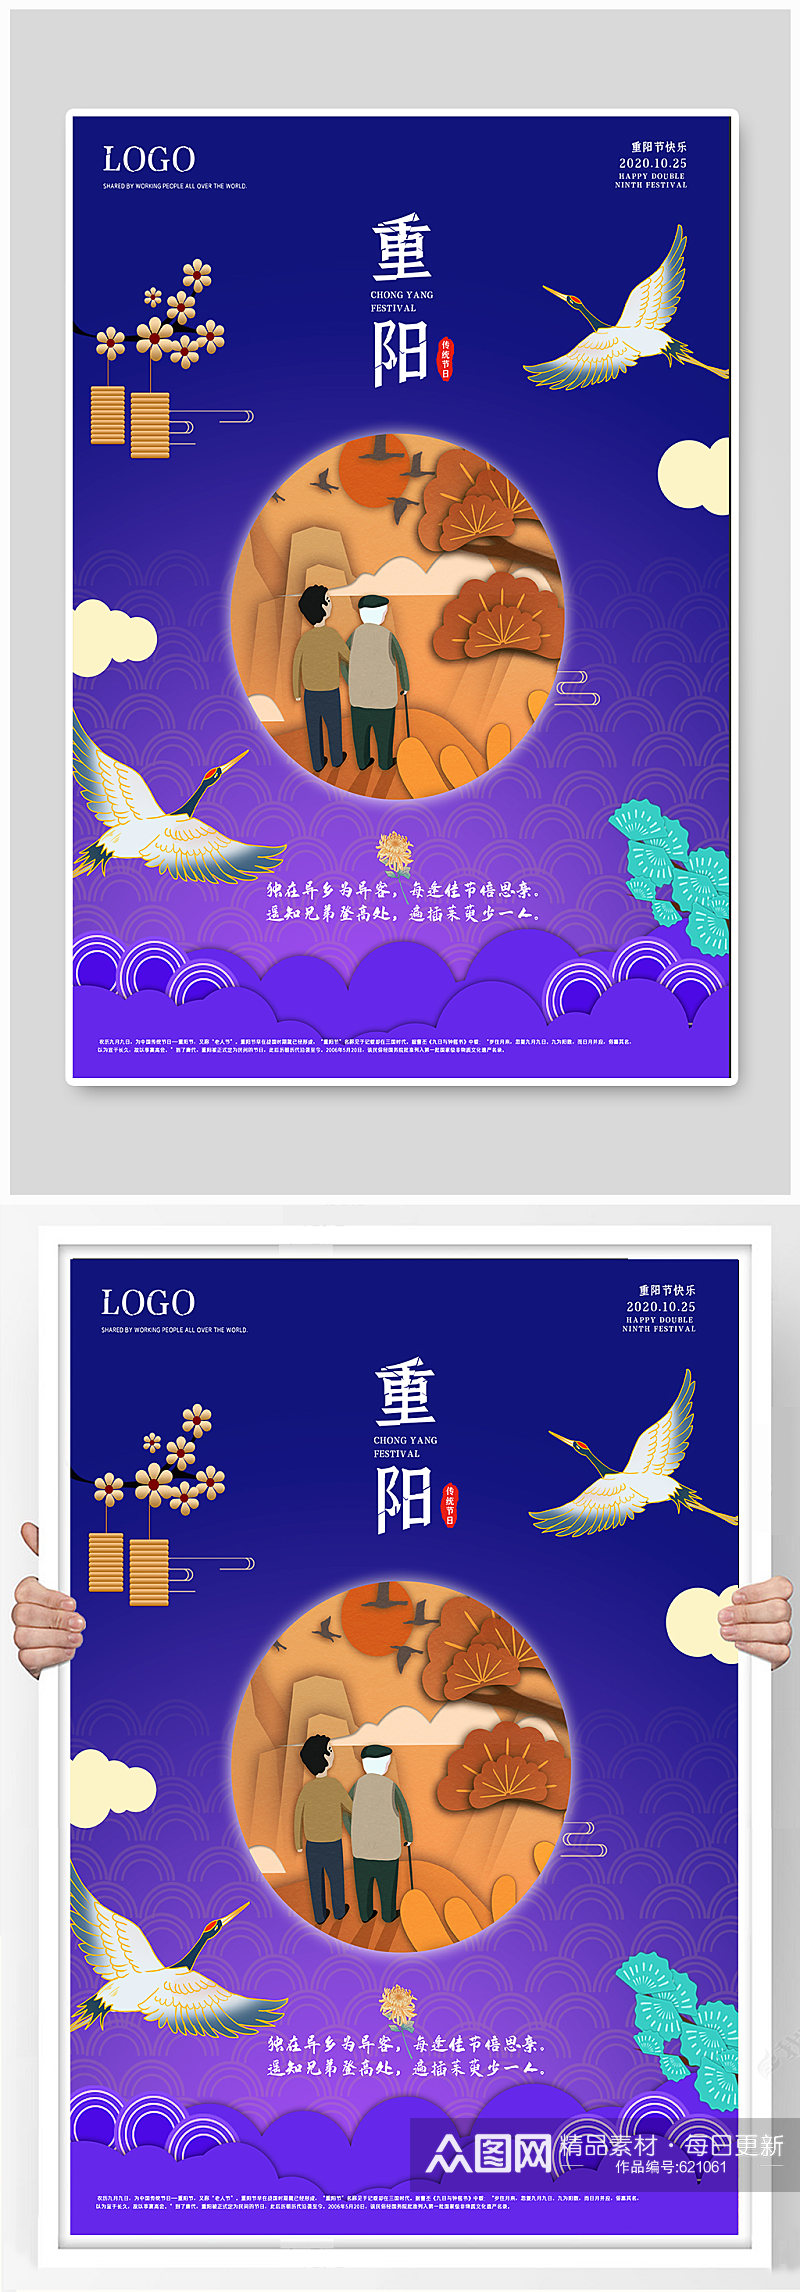 九月九传统节日重阳节海报素材